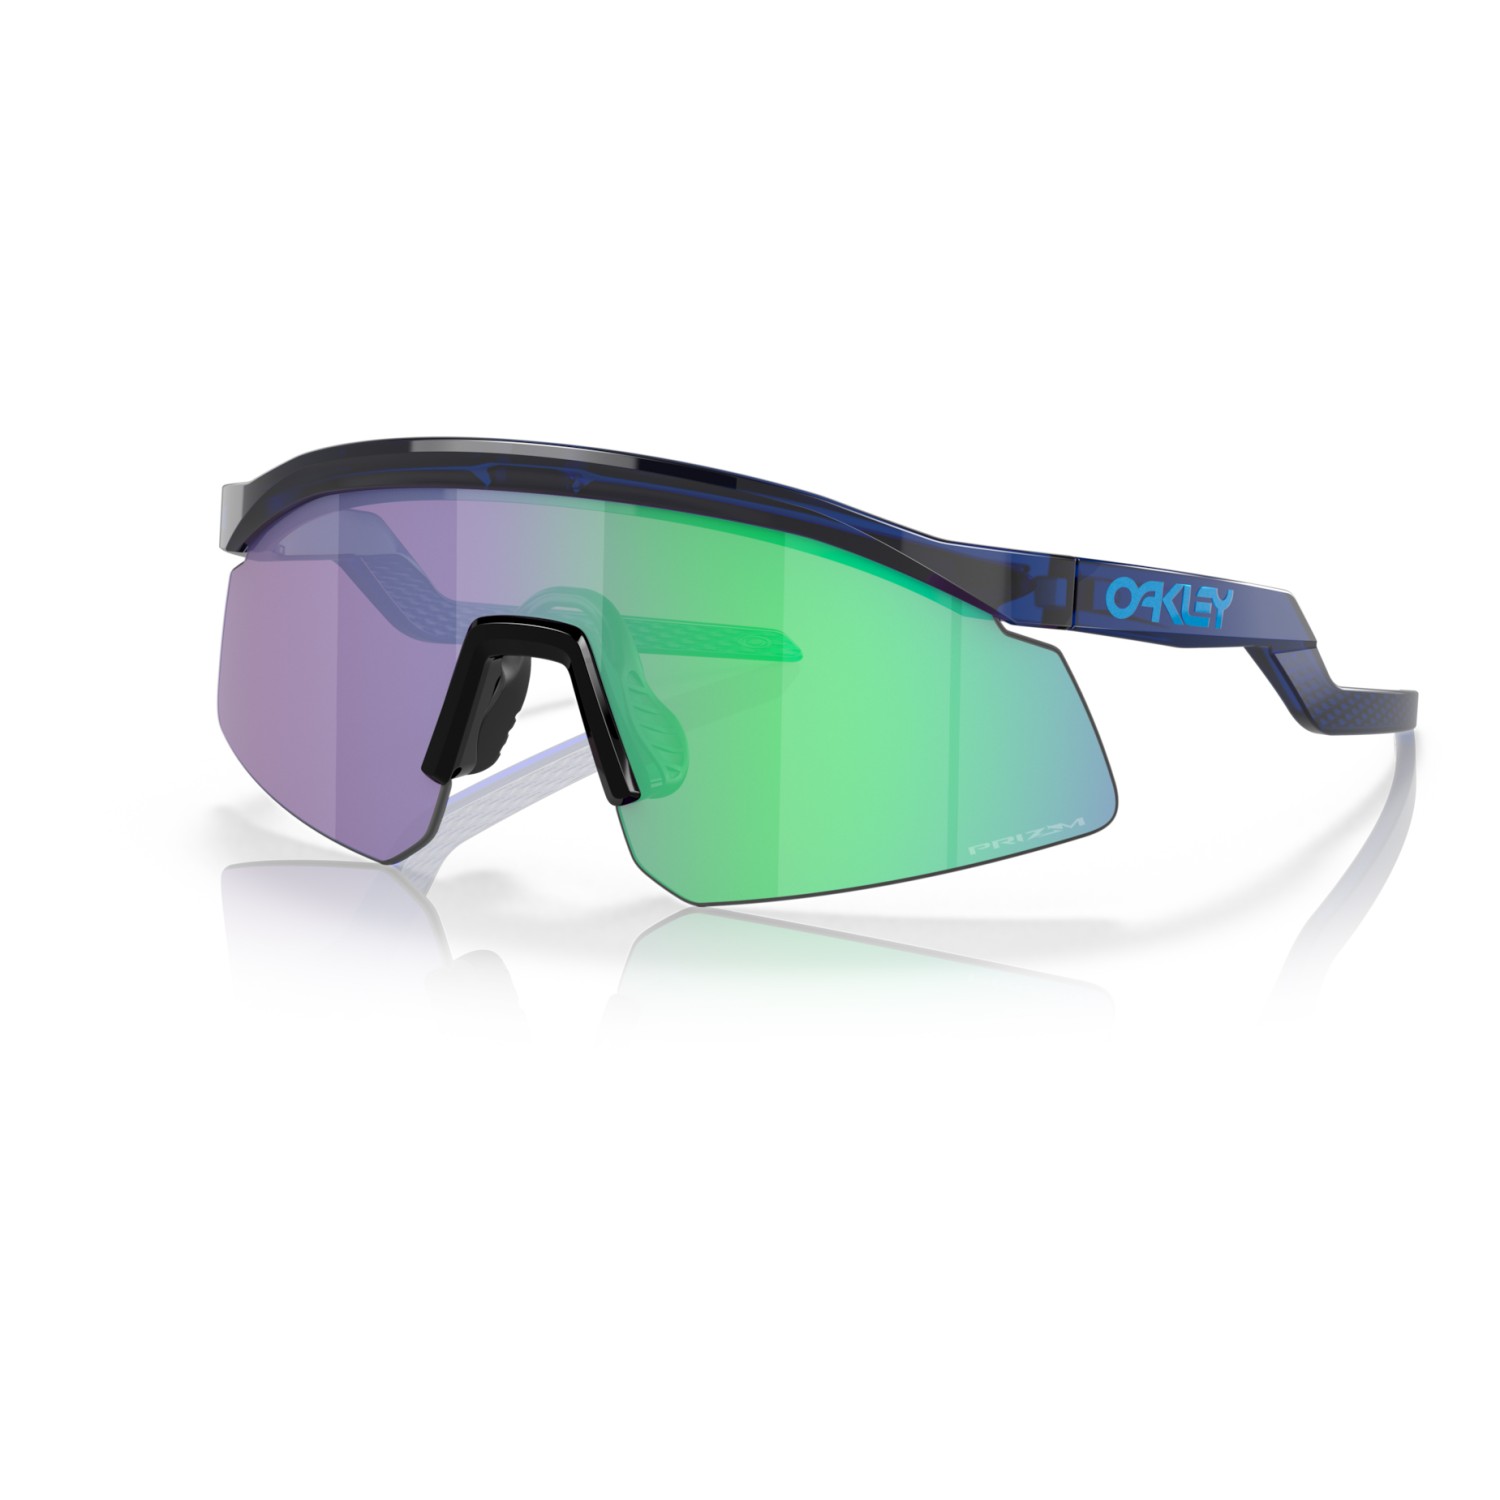 Солнцезащитные очки Oakley Hydra S3 (VLT 14%), цвет Translucent Blue